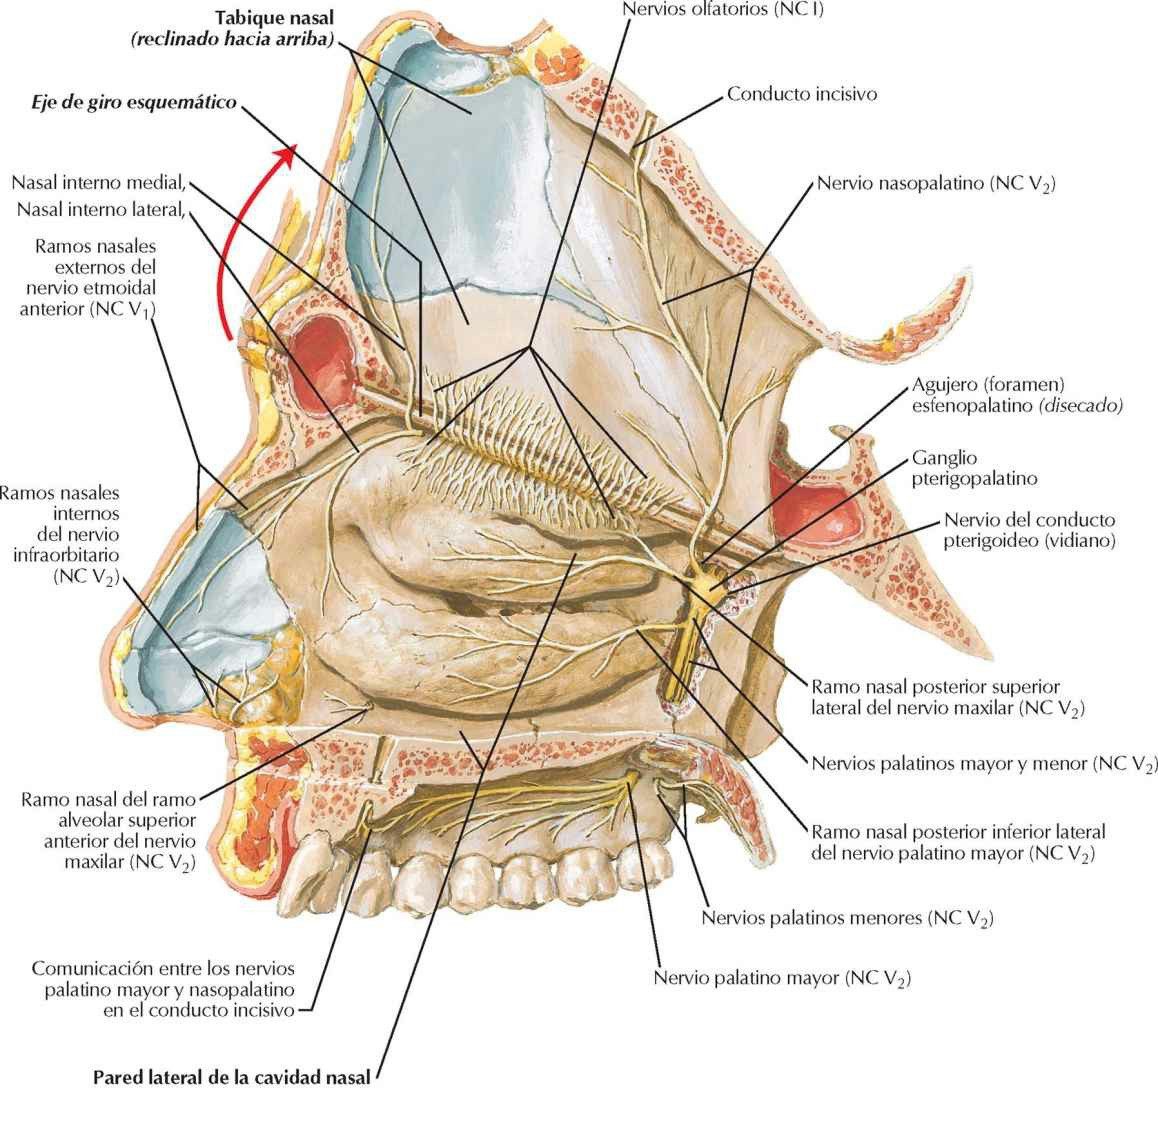 Nervios de la cavidad nasal: tabique nasal
reclinado hacia arriba.